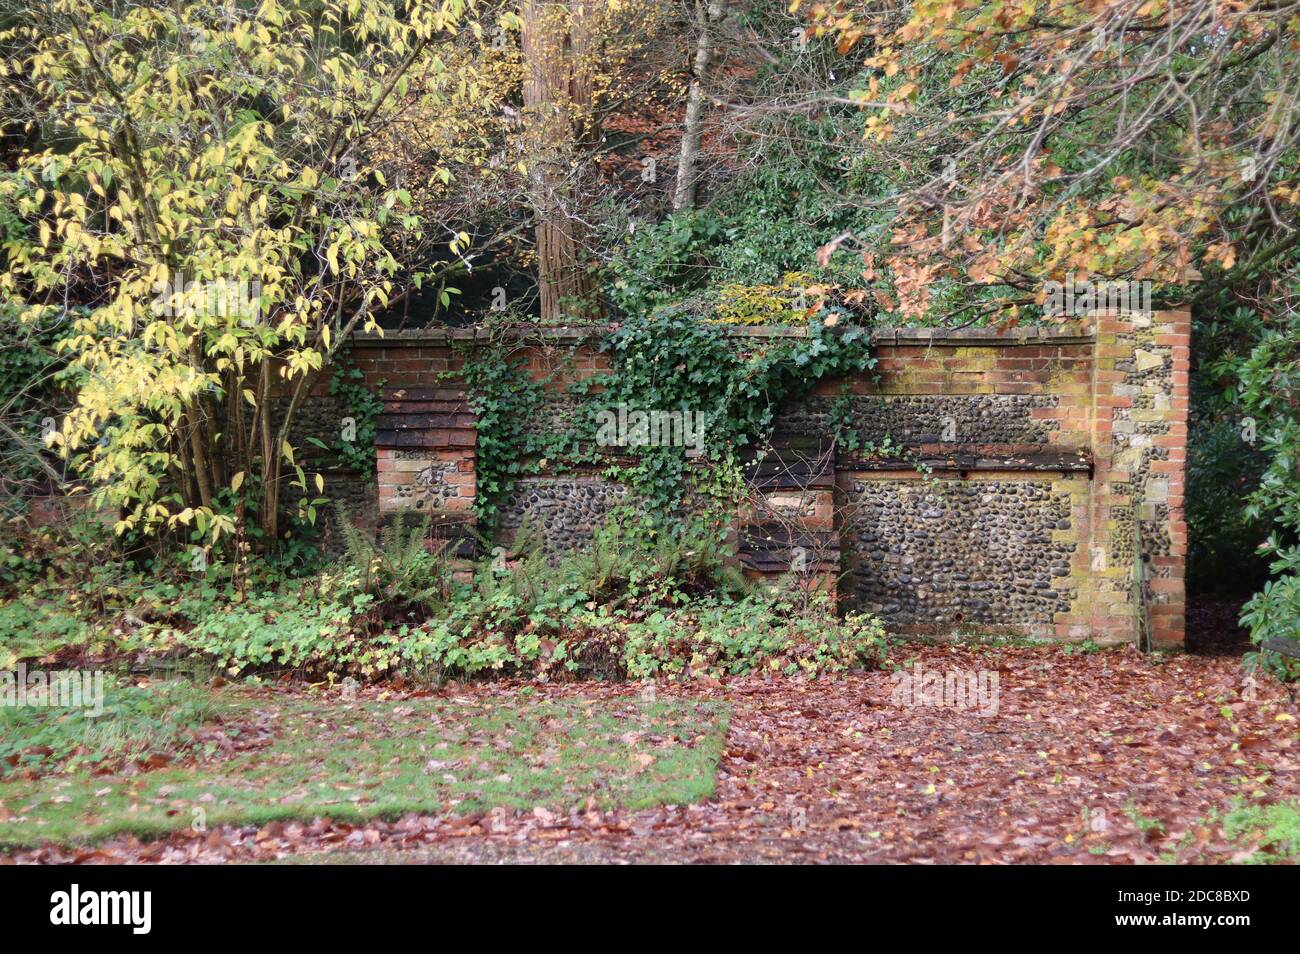 Image de très vieux mur de pierre et de brique en automne avec arbres et buissons jaunissants Banque D'Images